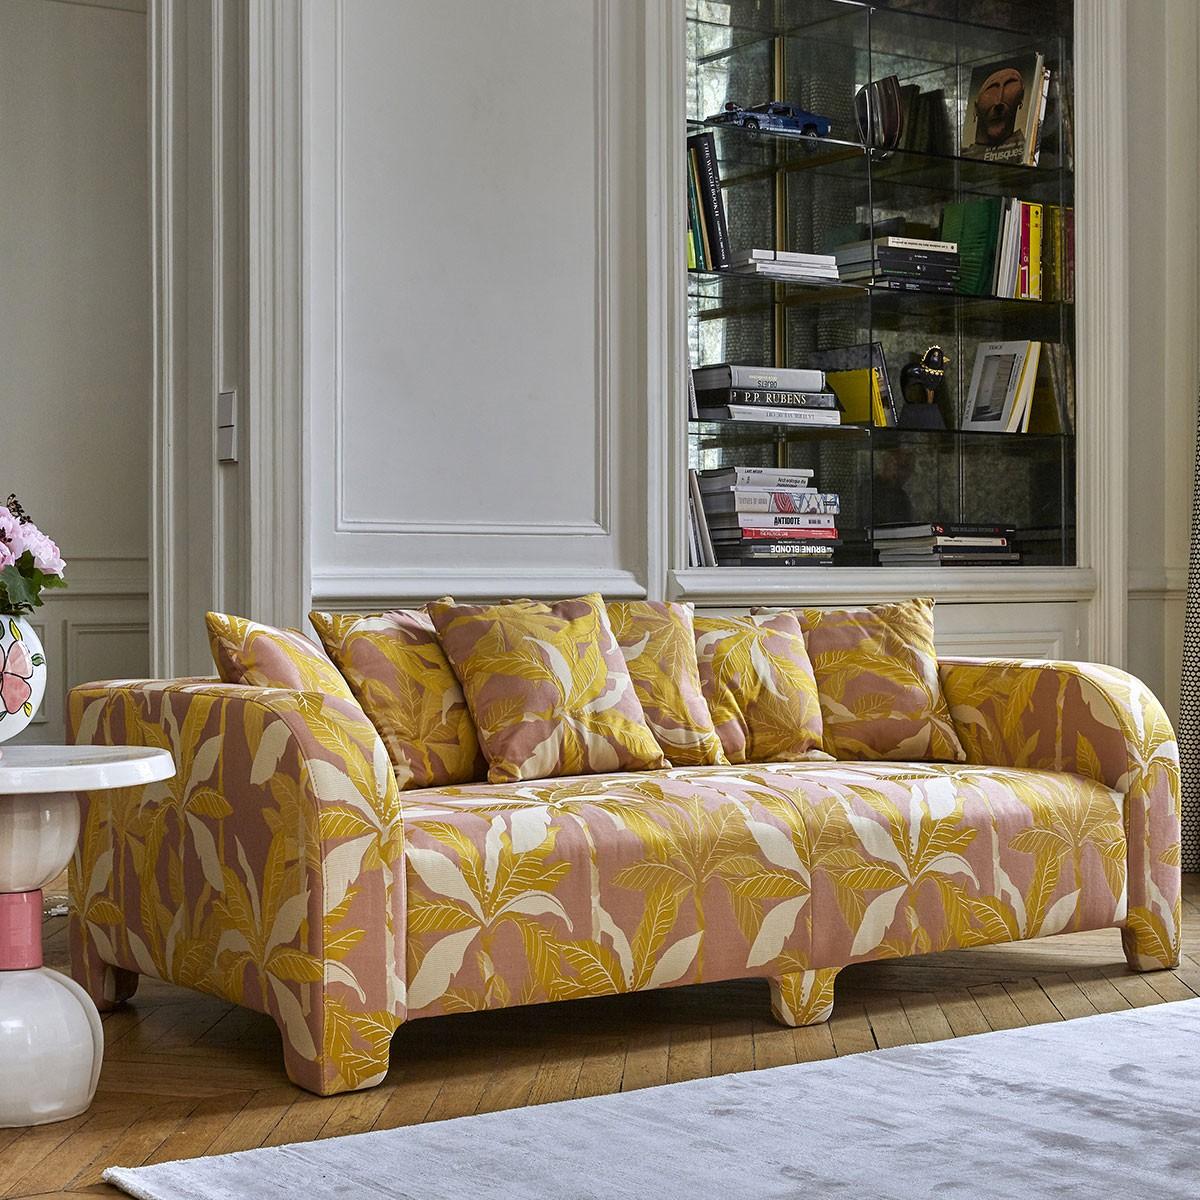 Popus Editions Graziella 3 Seater Sofa in Ciotello Venice Chenille Velvet Fabric In New Condition For Sale In Paris, FR